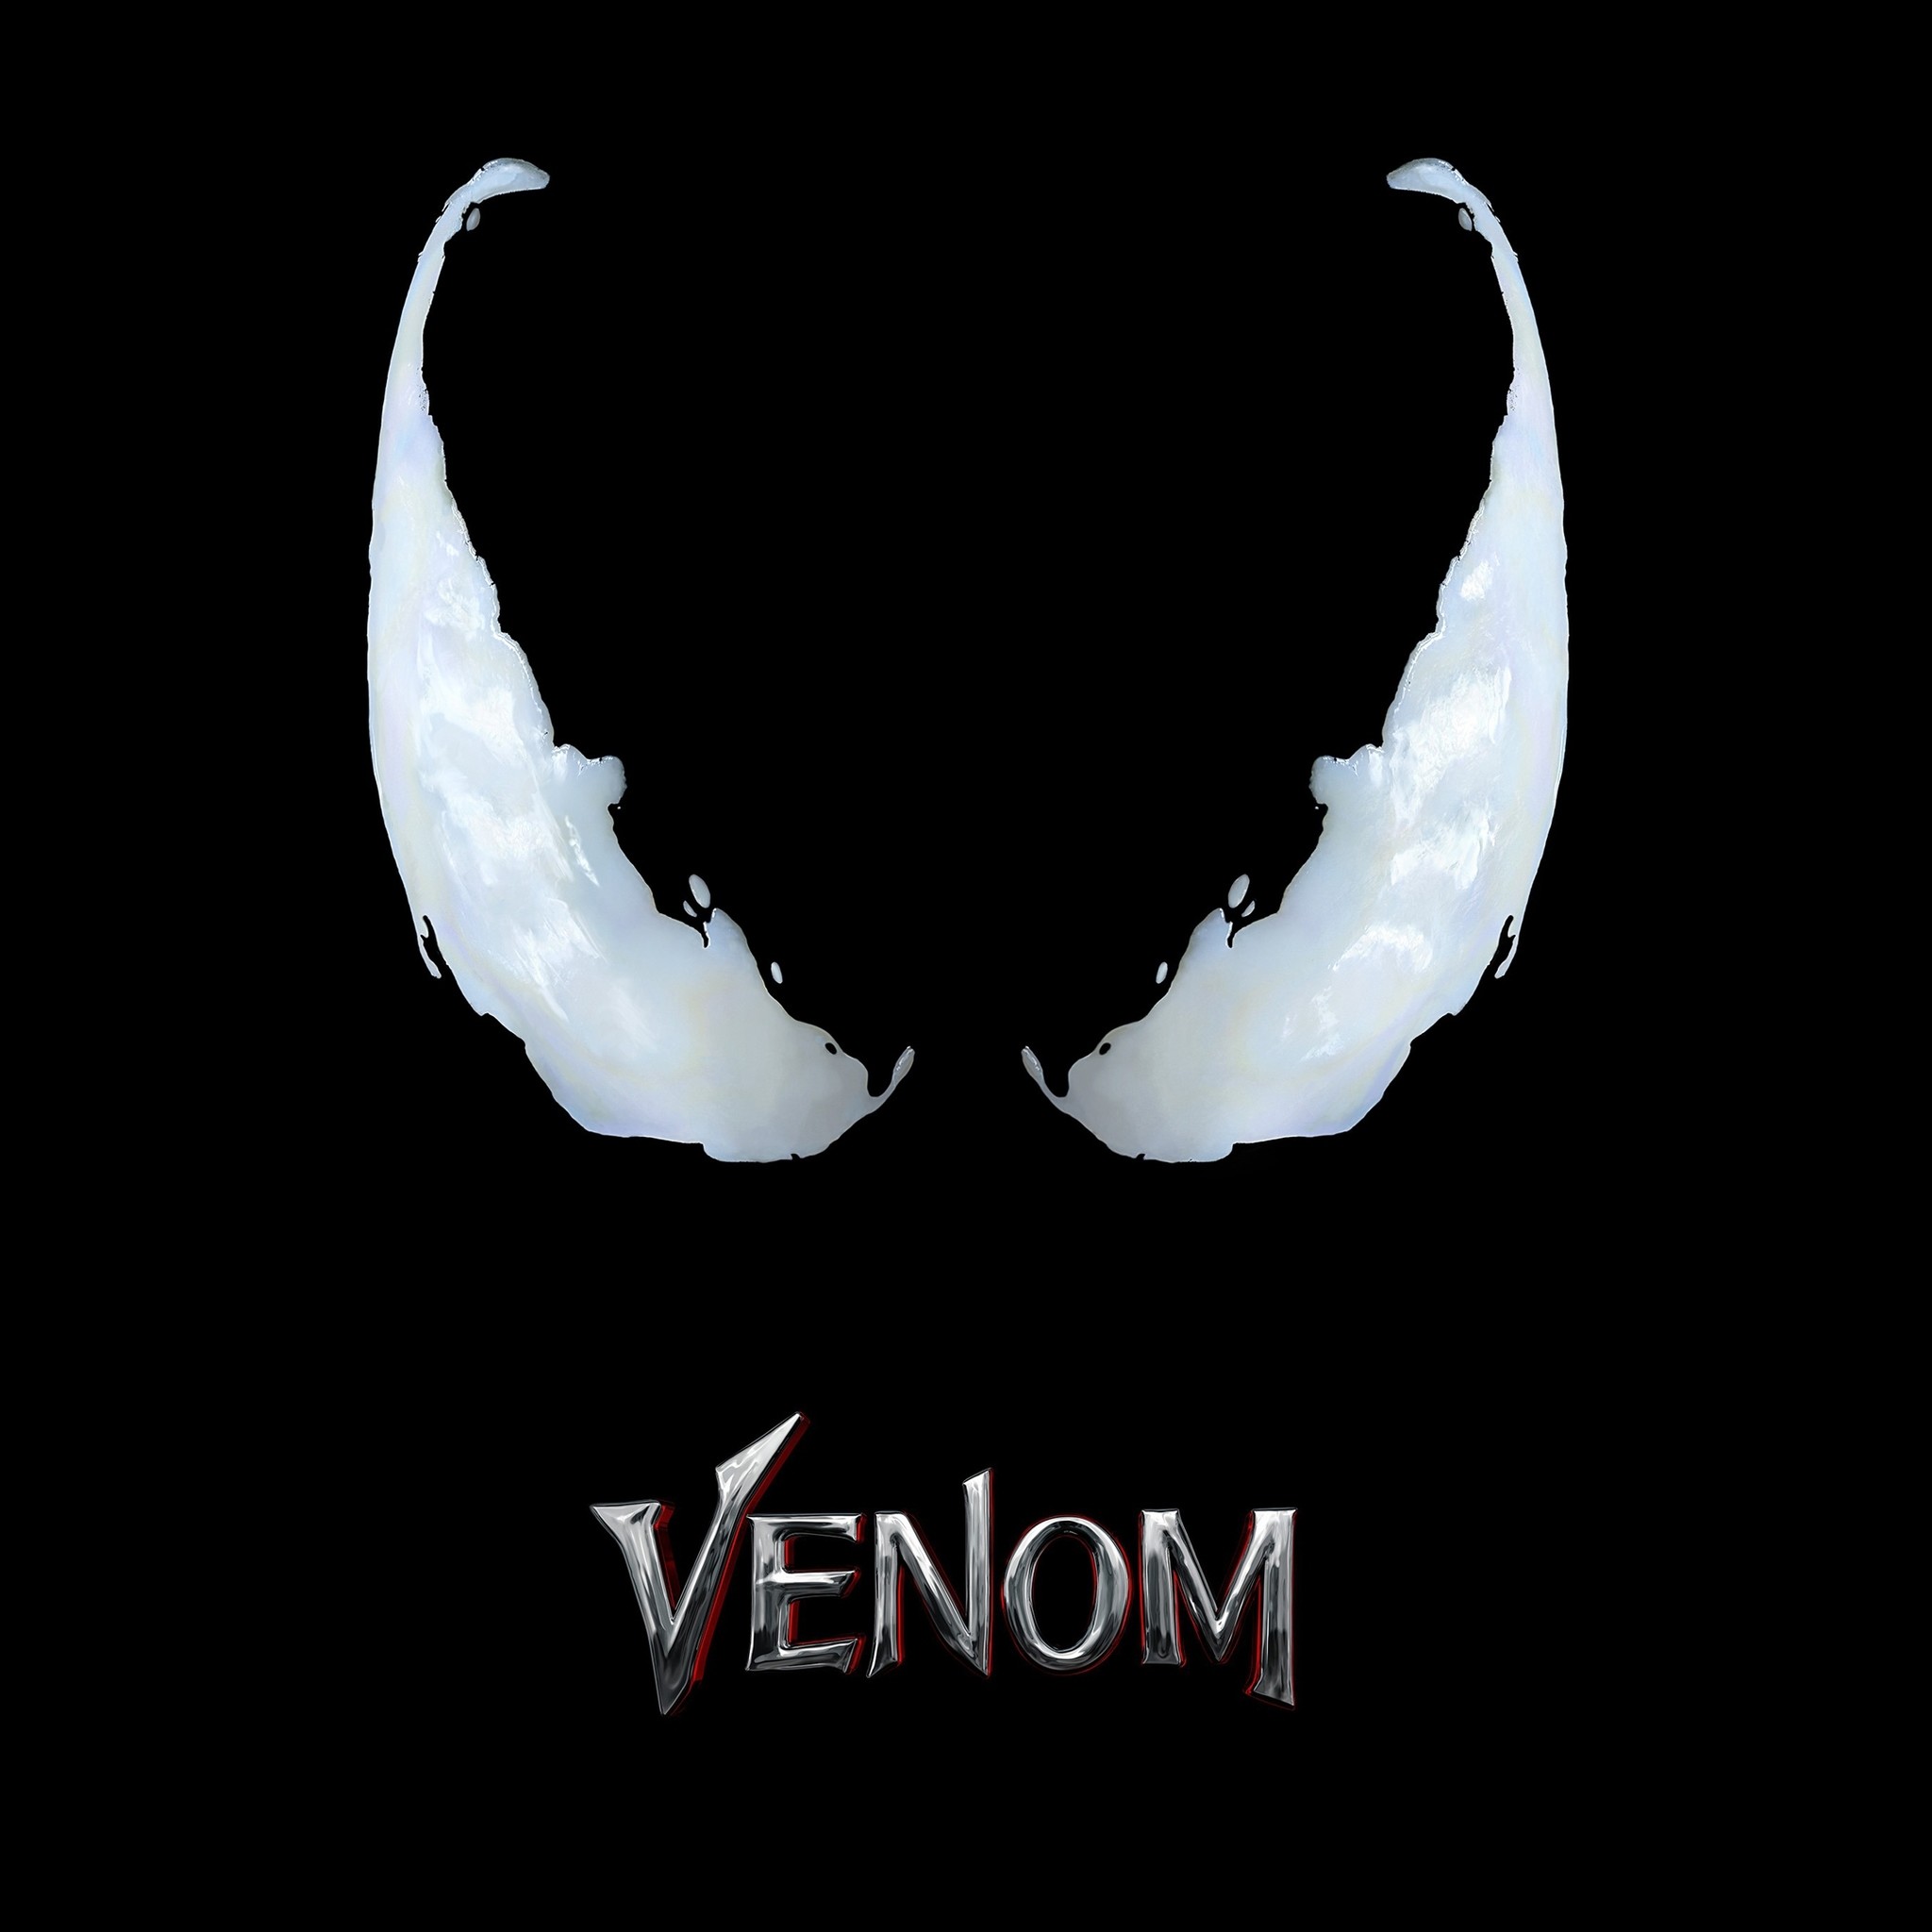 2048x2048 Venom Movie Logo 4k (Ipad Air)